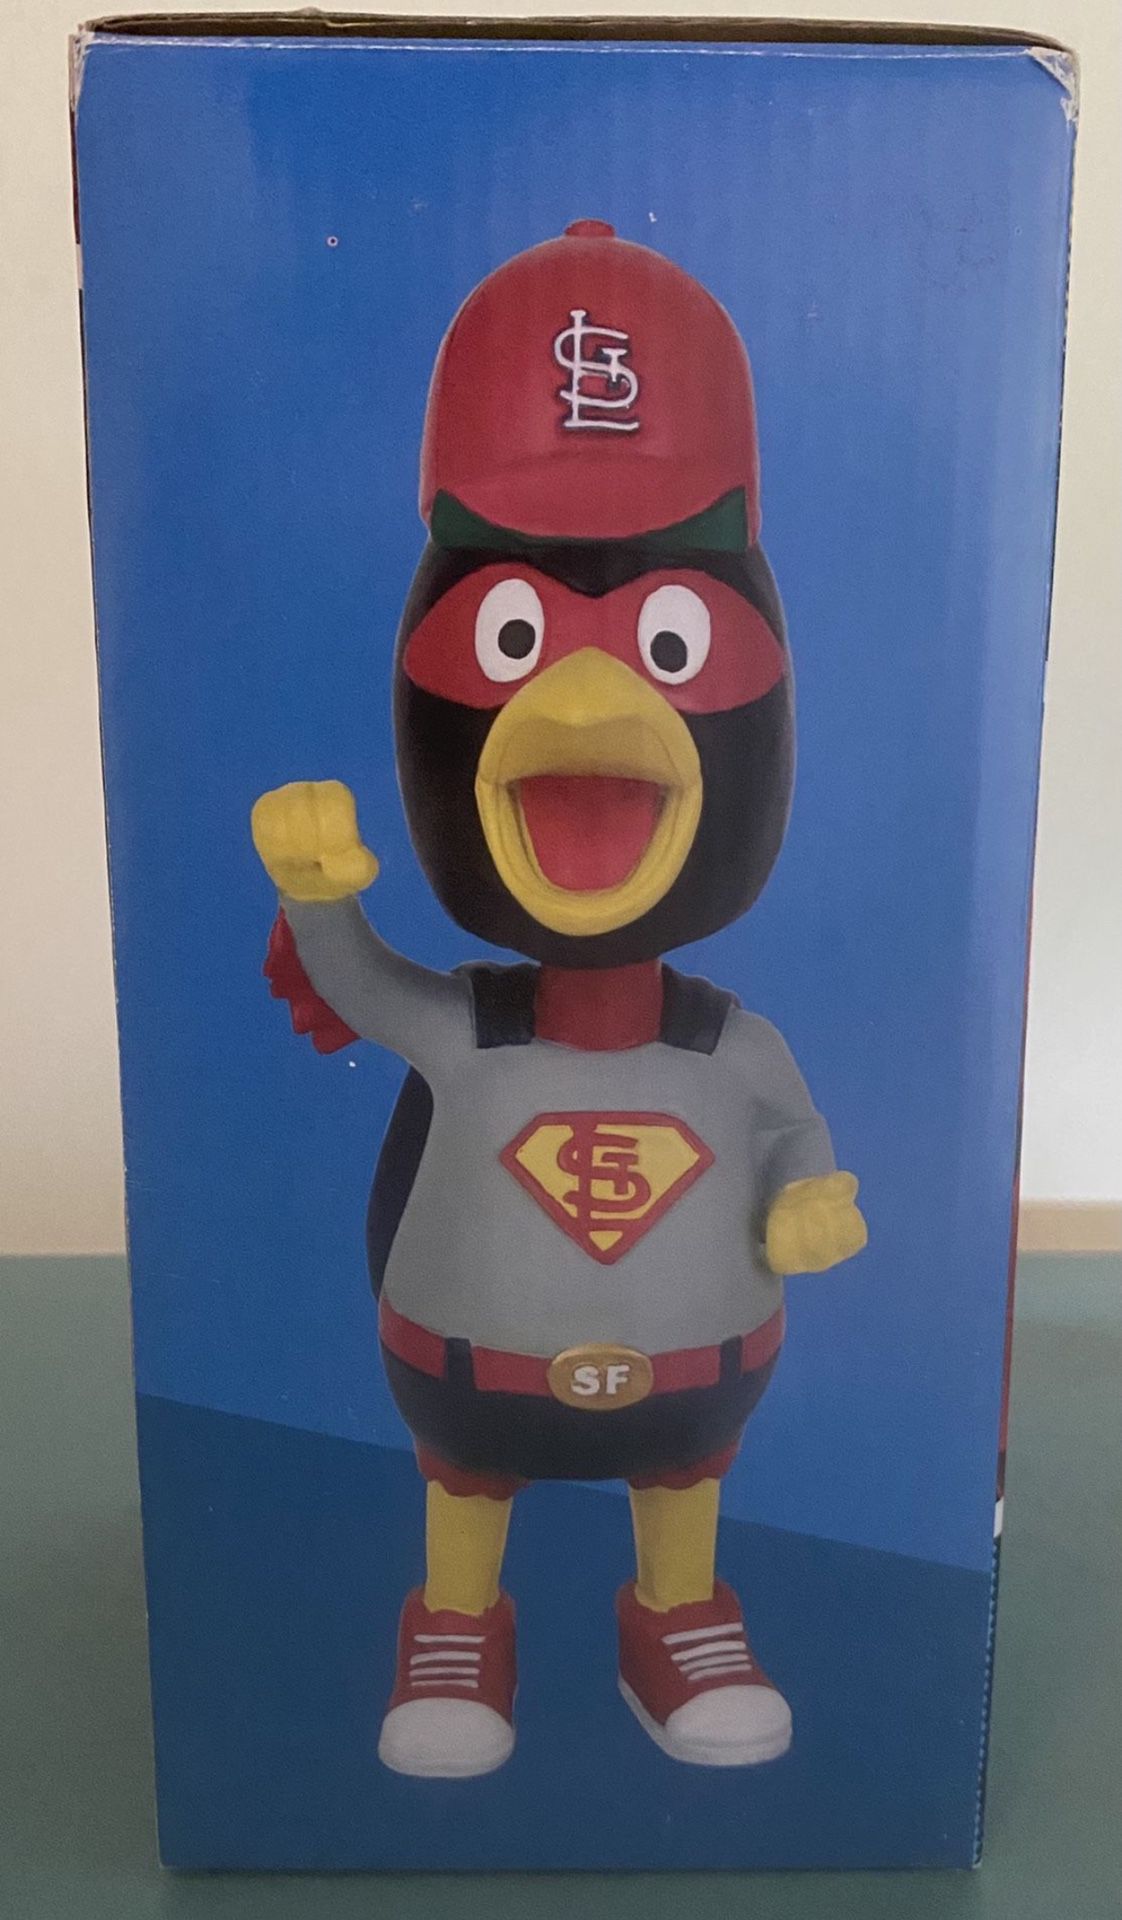 Fredbird St Louis Cardinals Grapefruit League Mascot Bobblehead